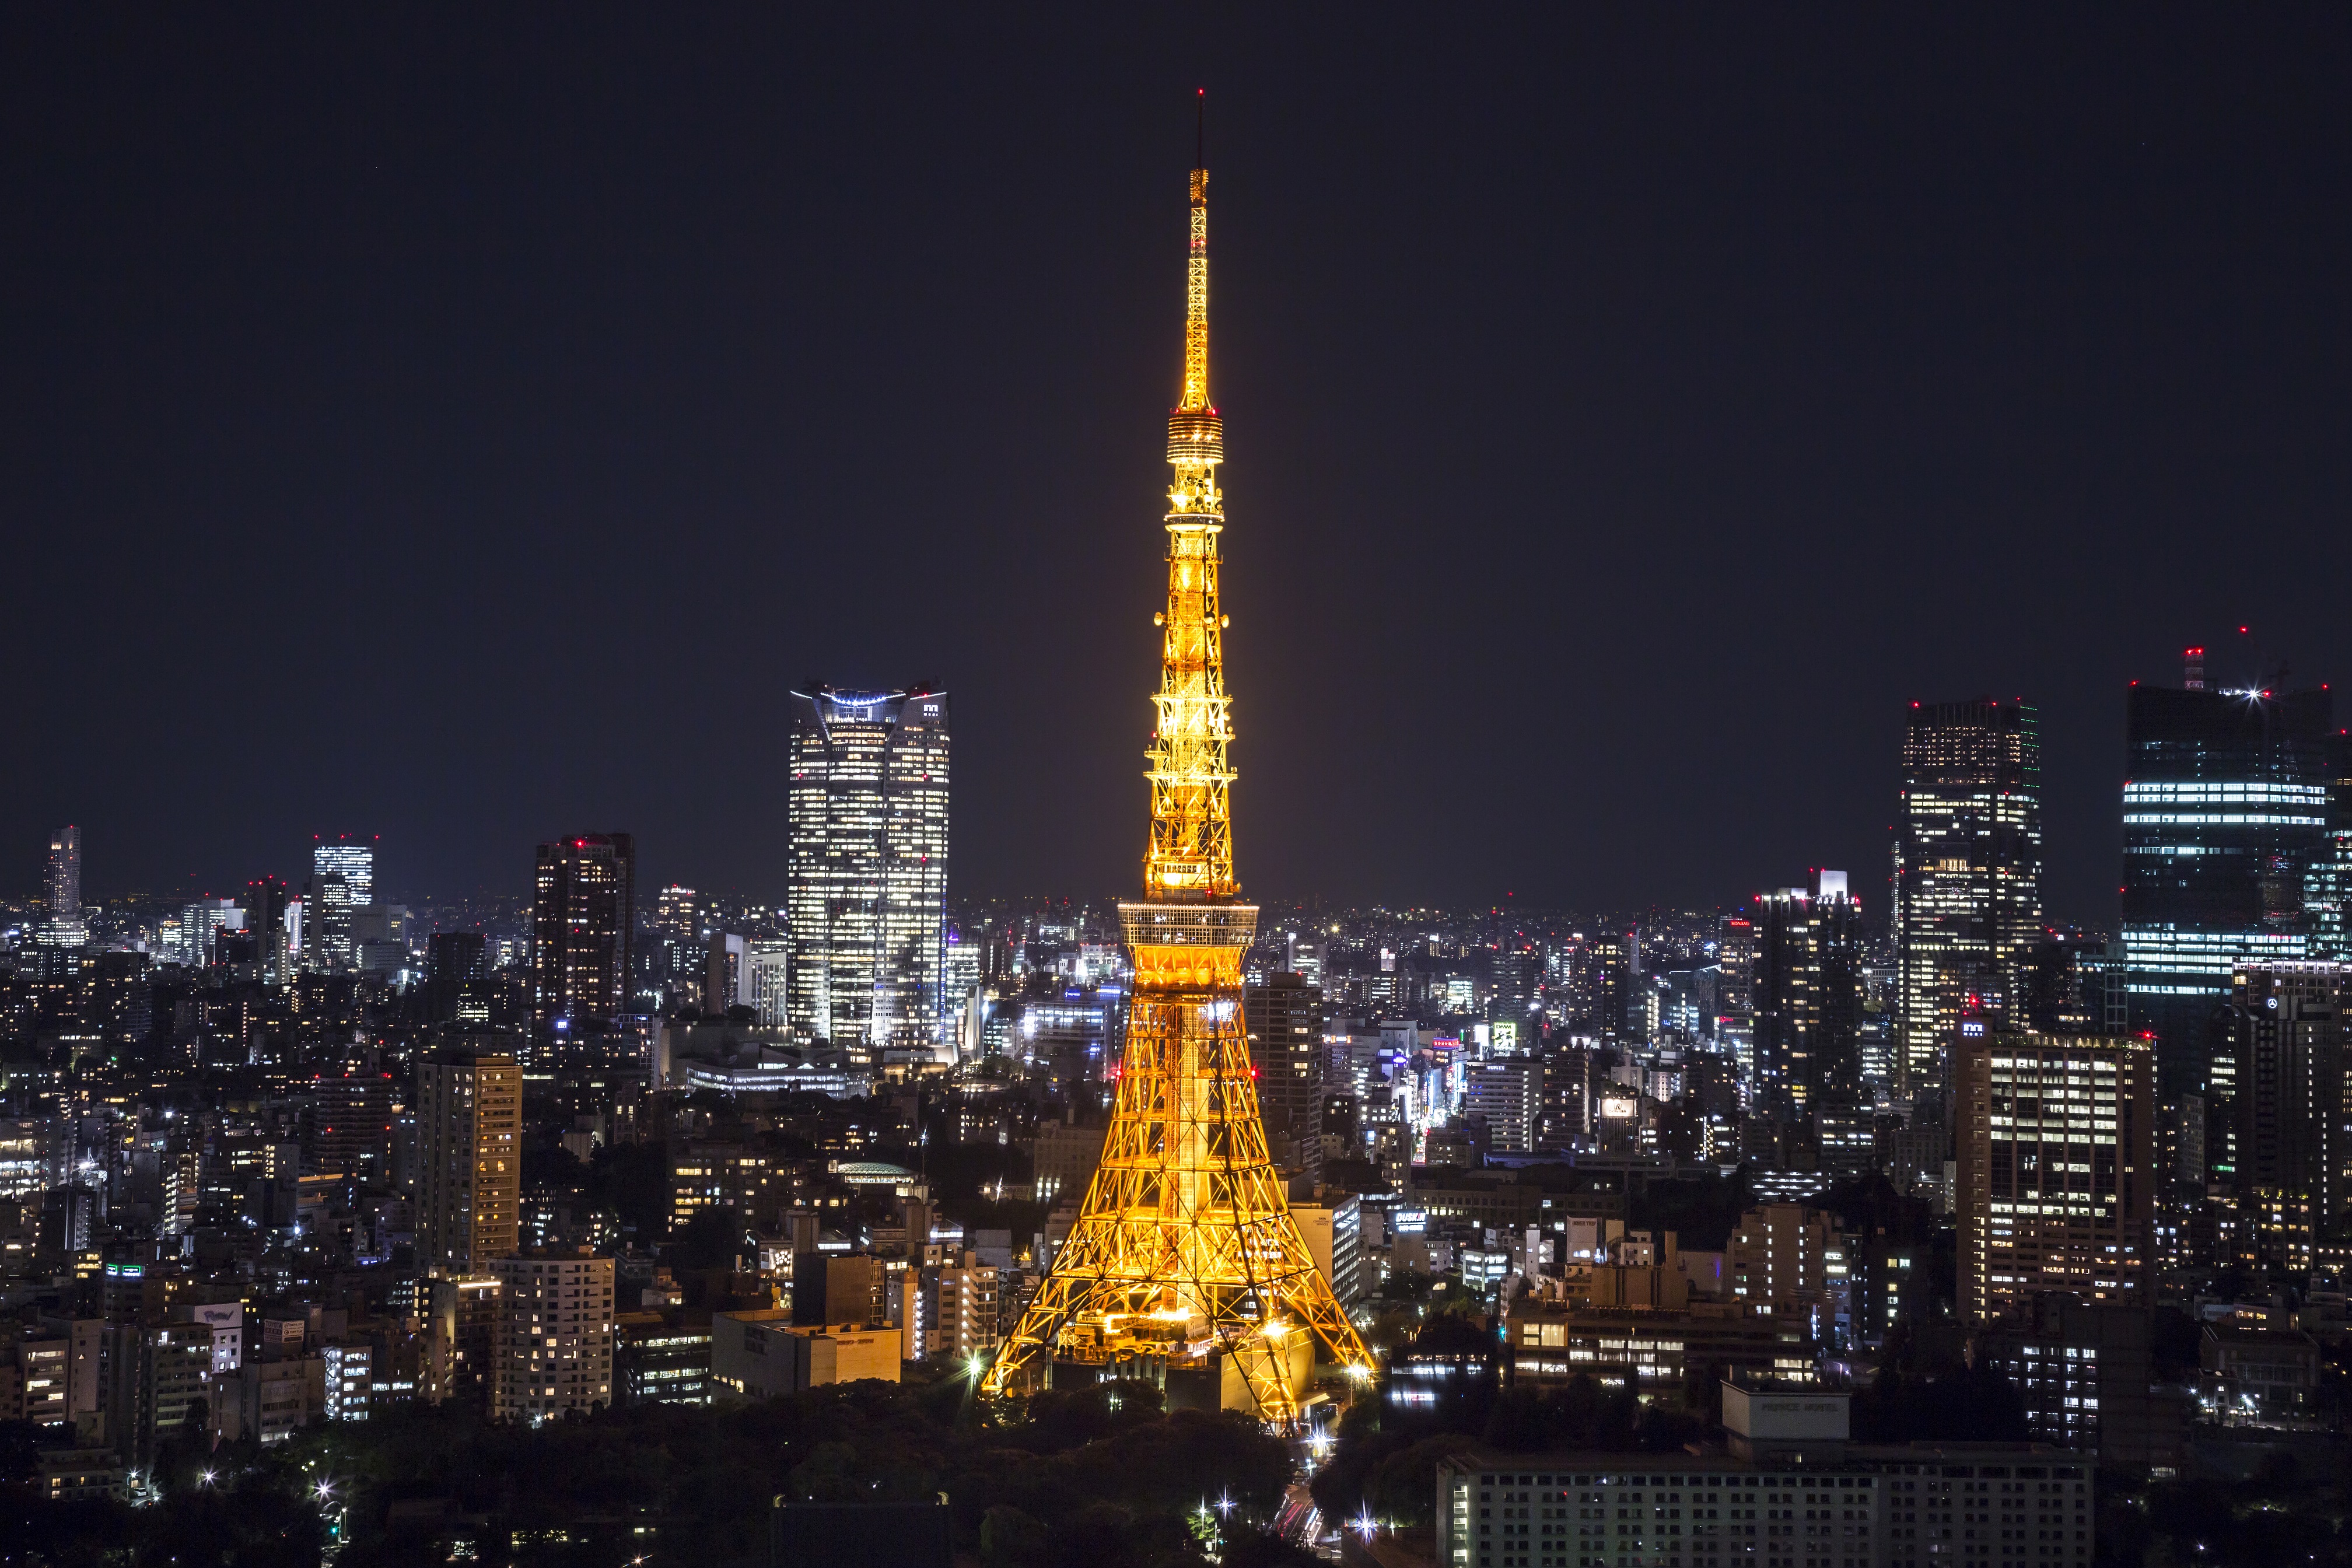 東京タワーメインデッキチケット 大人2枚 ペアチケット - 施設利用券